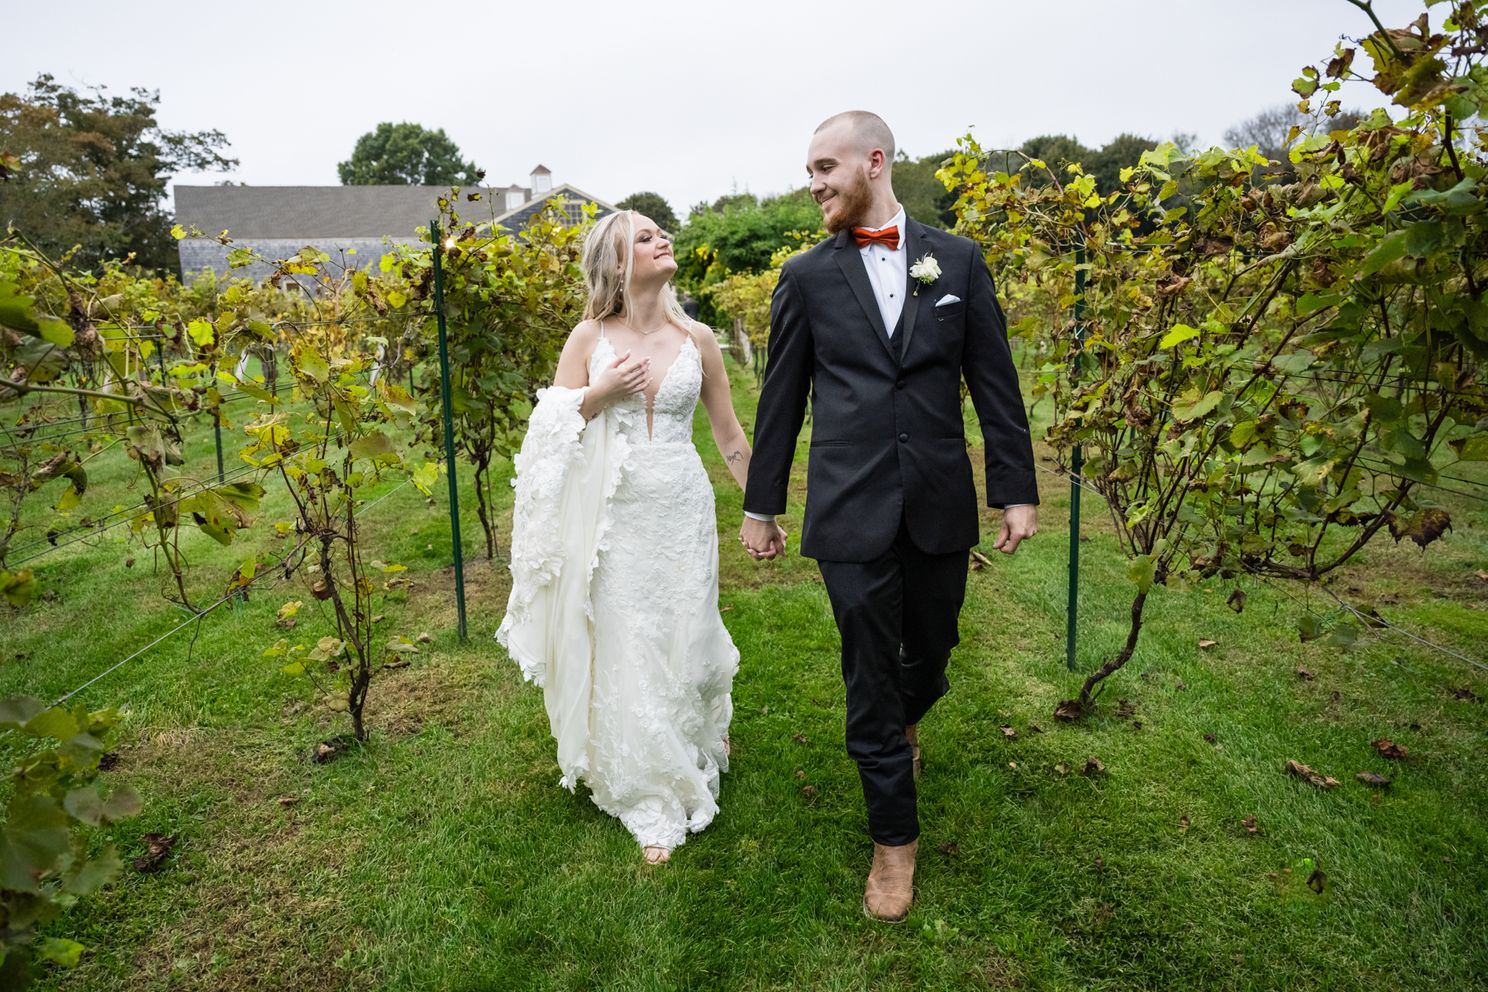 bride and groom walking posejpg